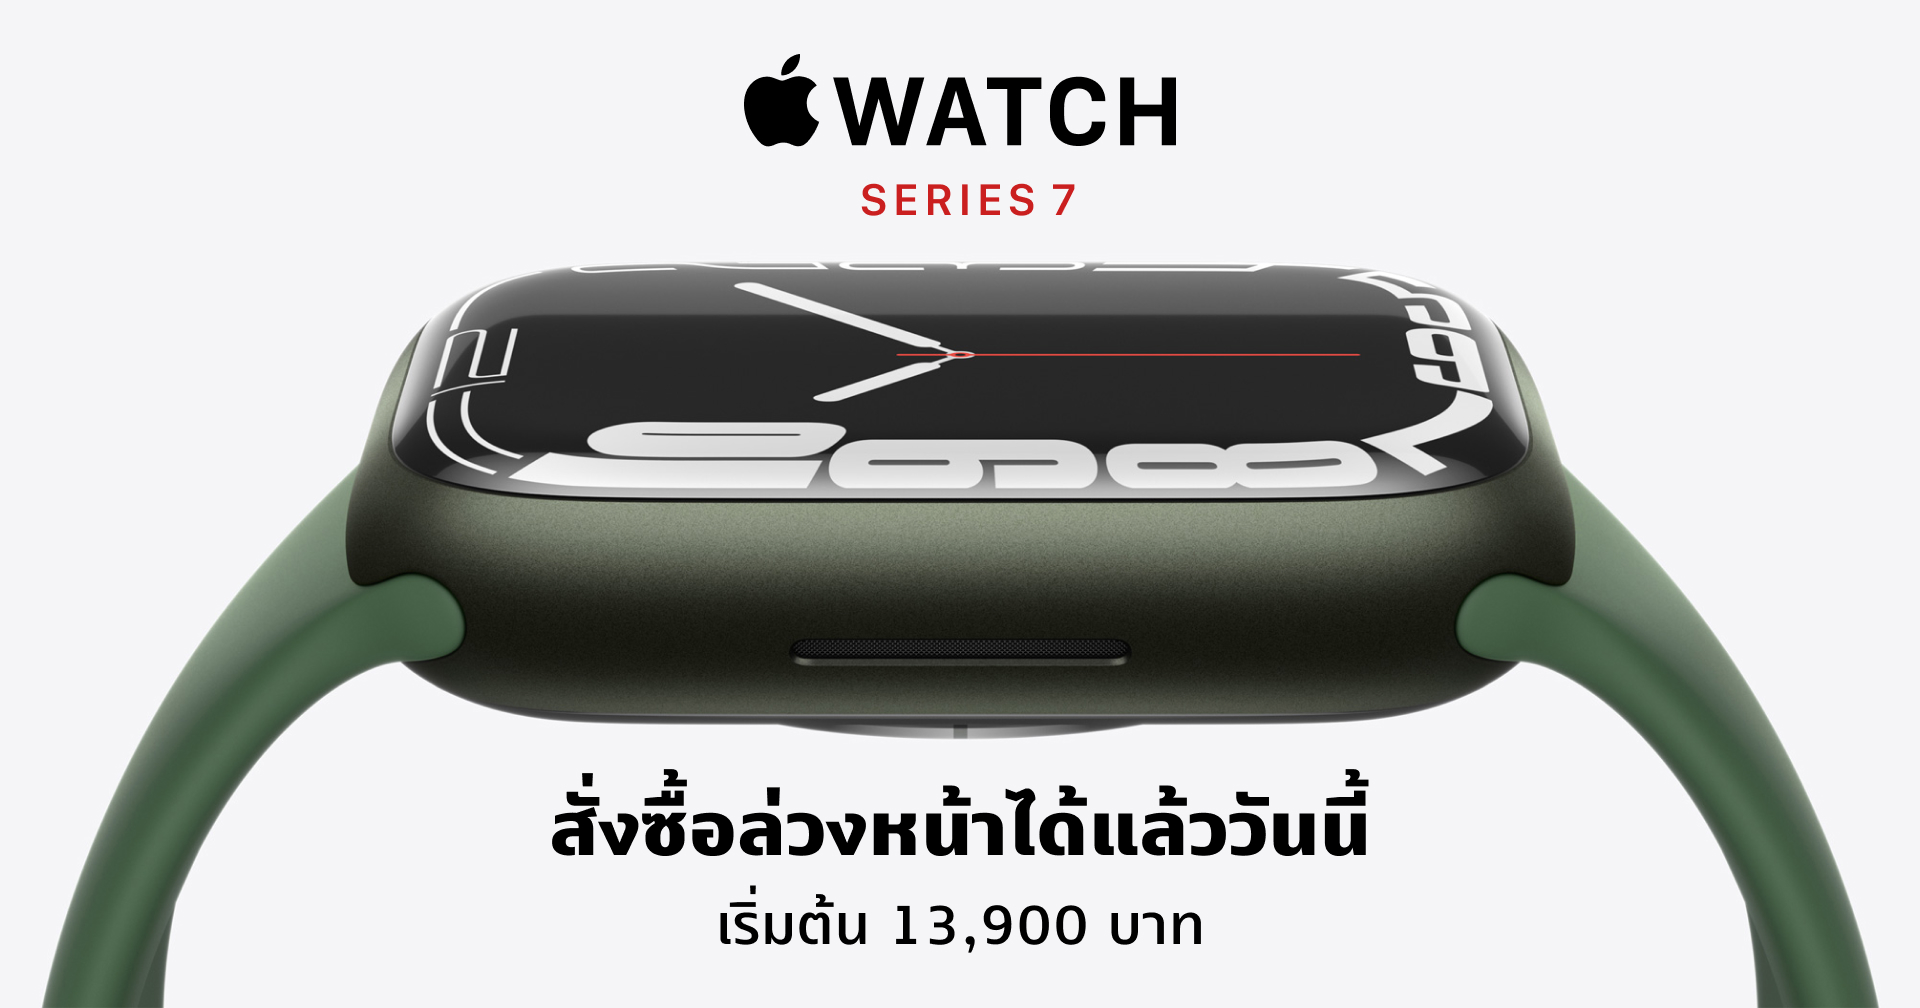 เปิดโผราคา Apple Watch Series 7 ทั้งรุ่น GPS และ Cellular เริ่มต้น 13,900 บาท สั่งจองได้แล้ววันนี้!!